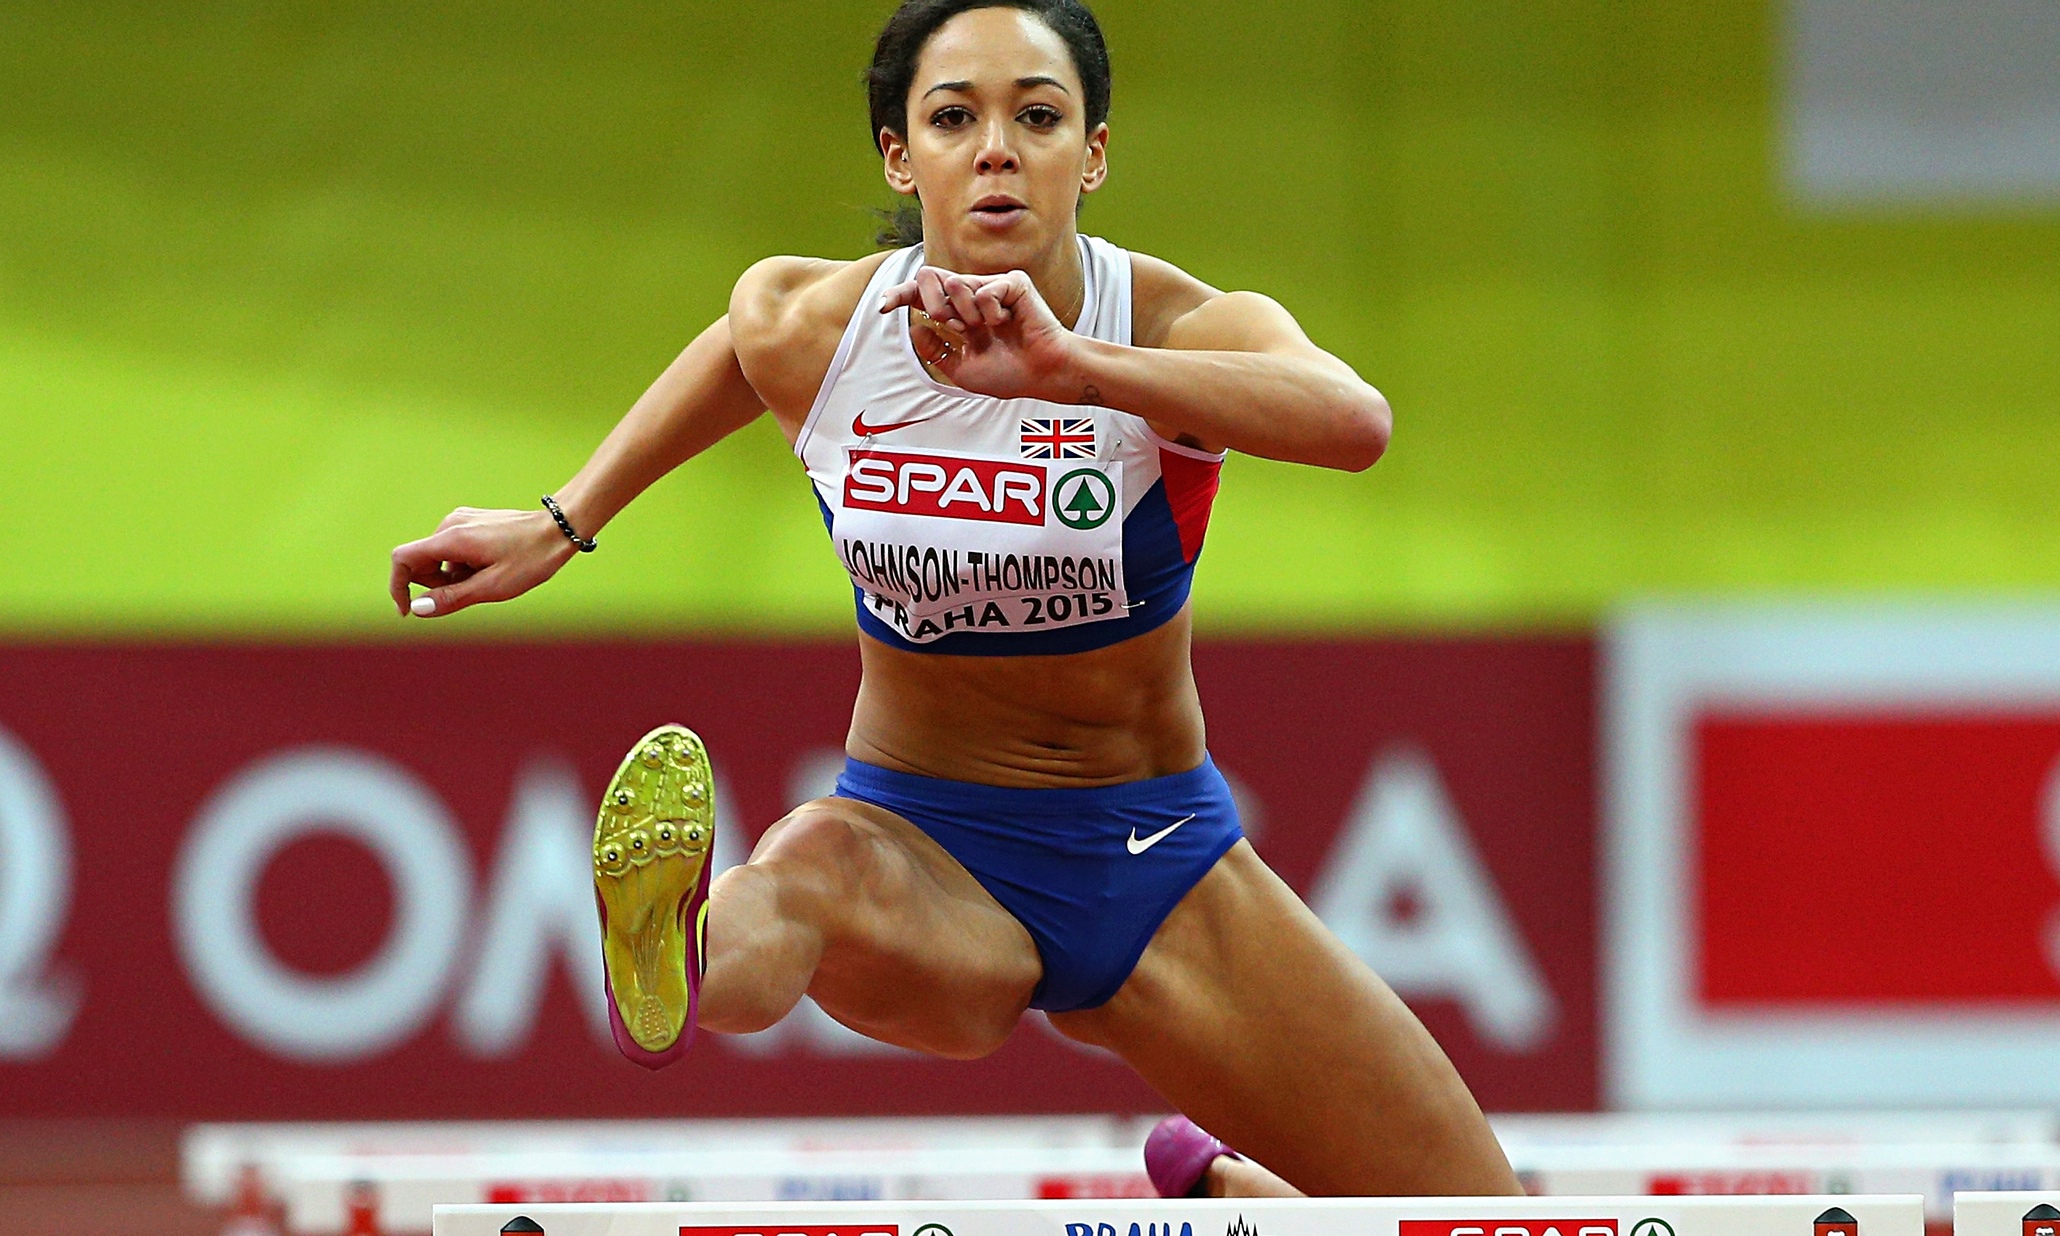 Katarina Johnson-Thompson won the pentathlon gold at the European Indoor Championships in Prague